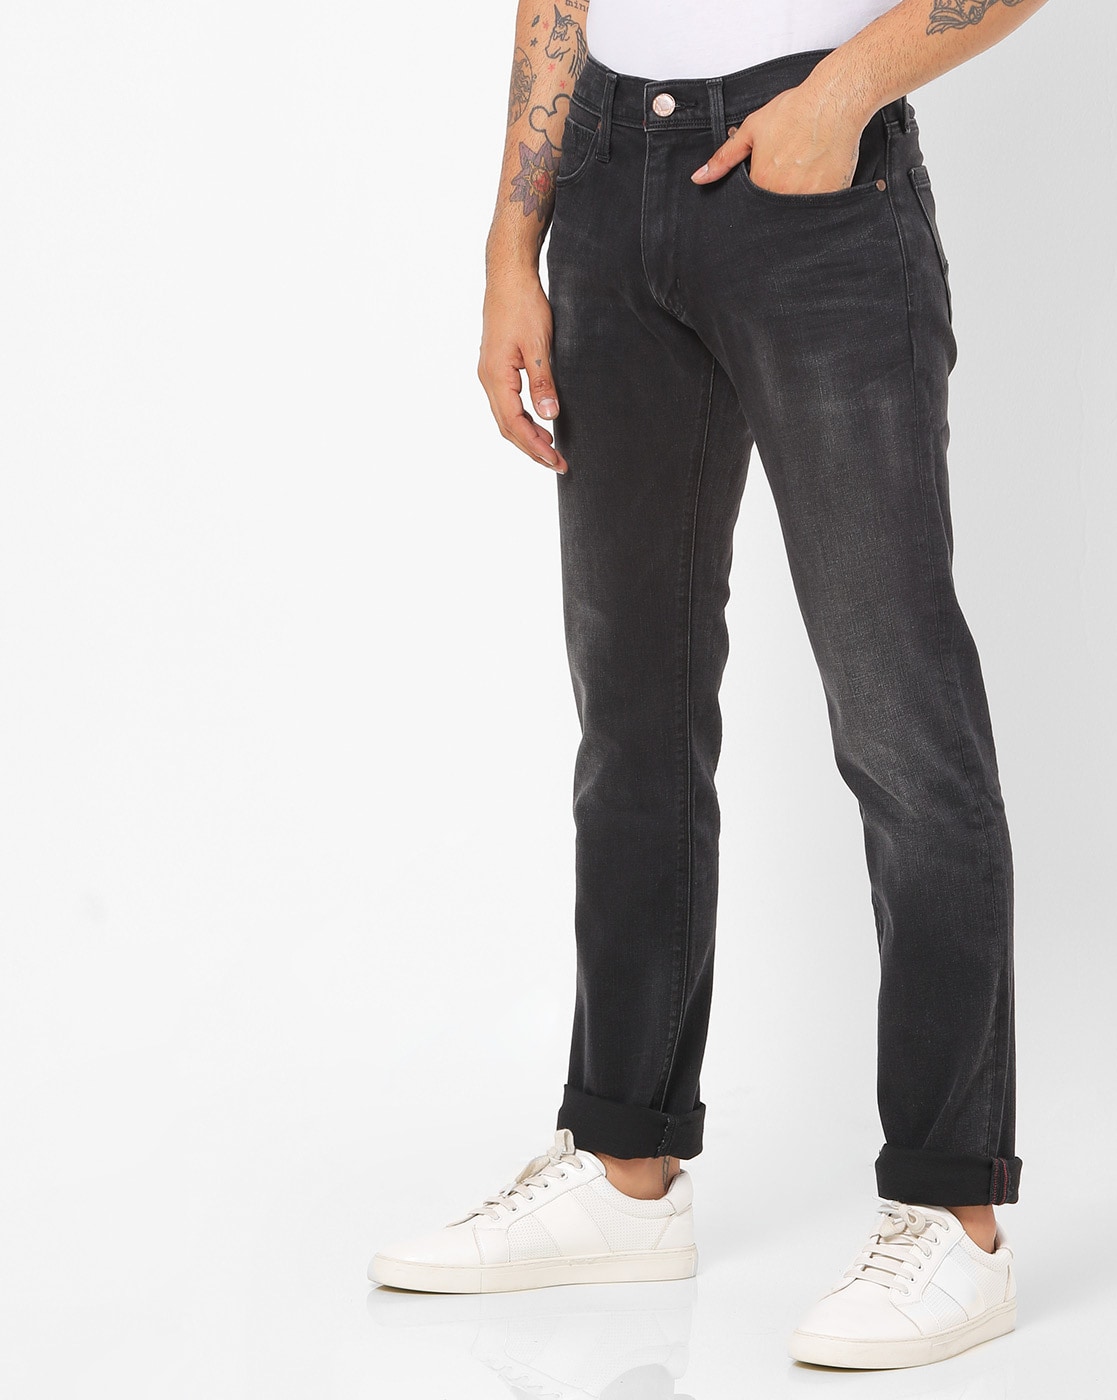 levis jeans 65504 black